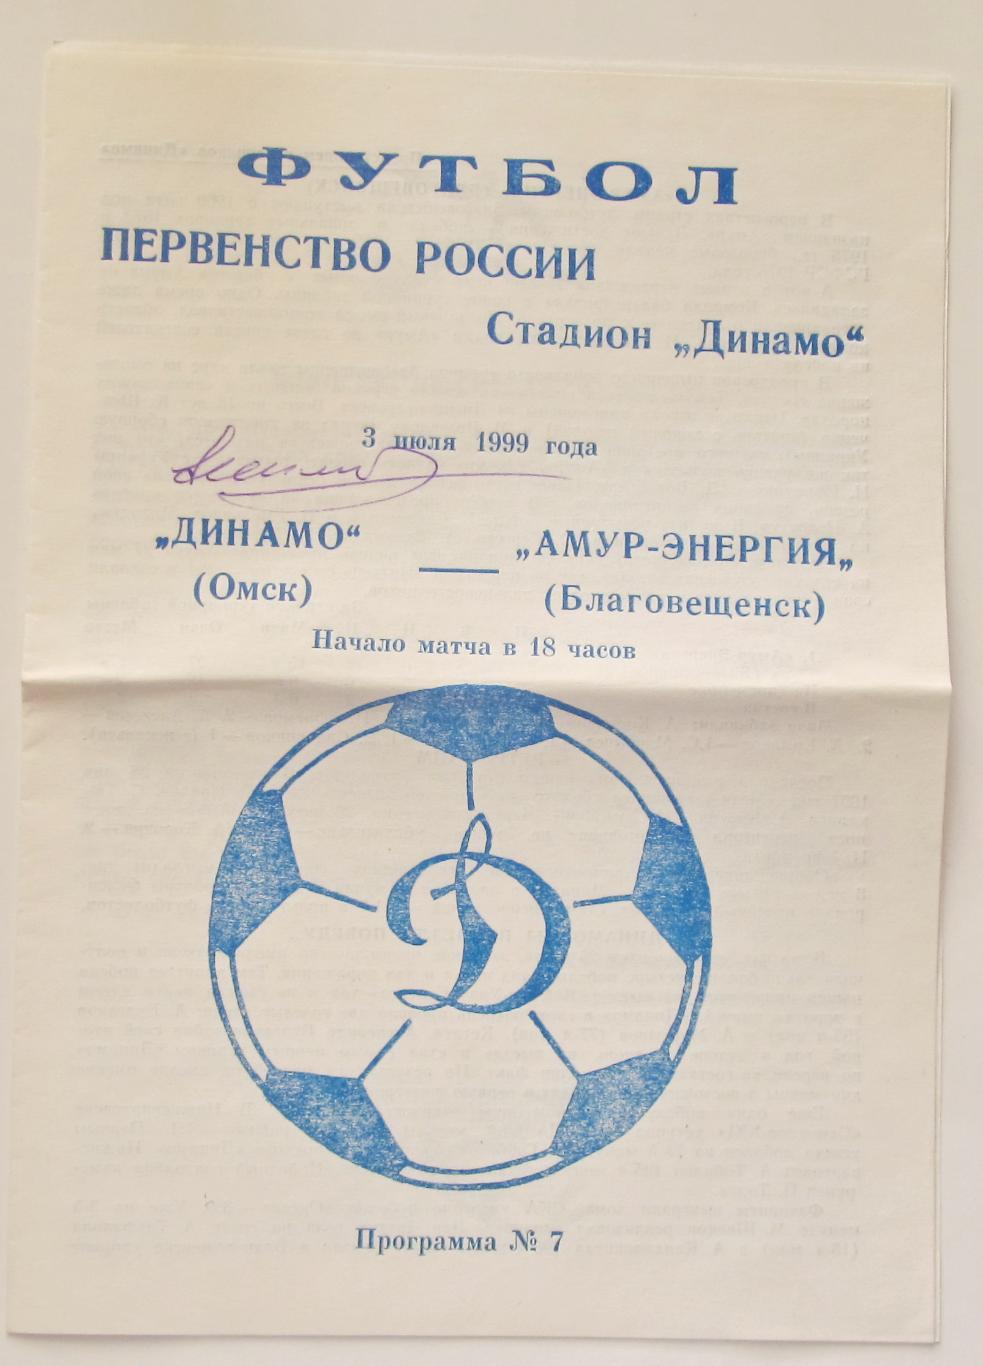 Автограф Н.Симоняна на футбольной программе.